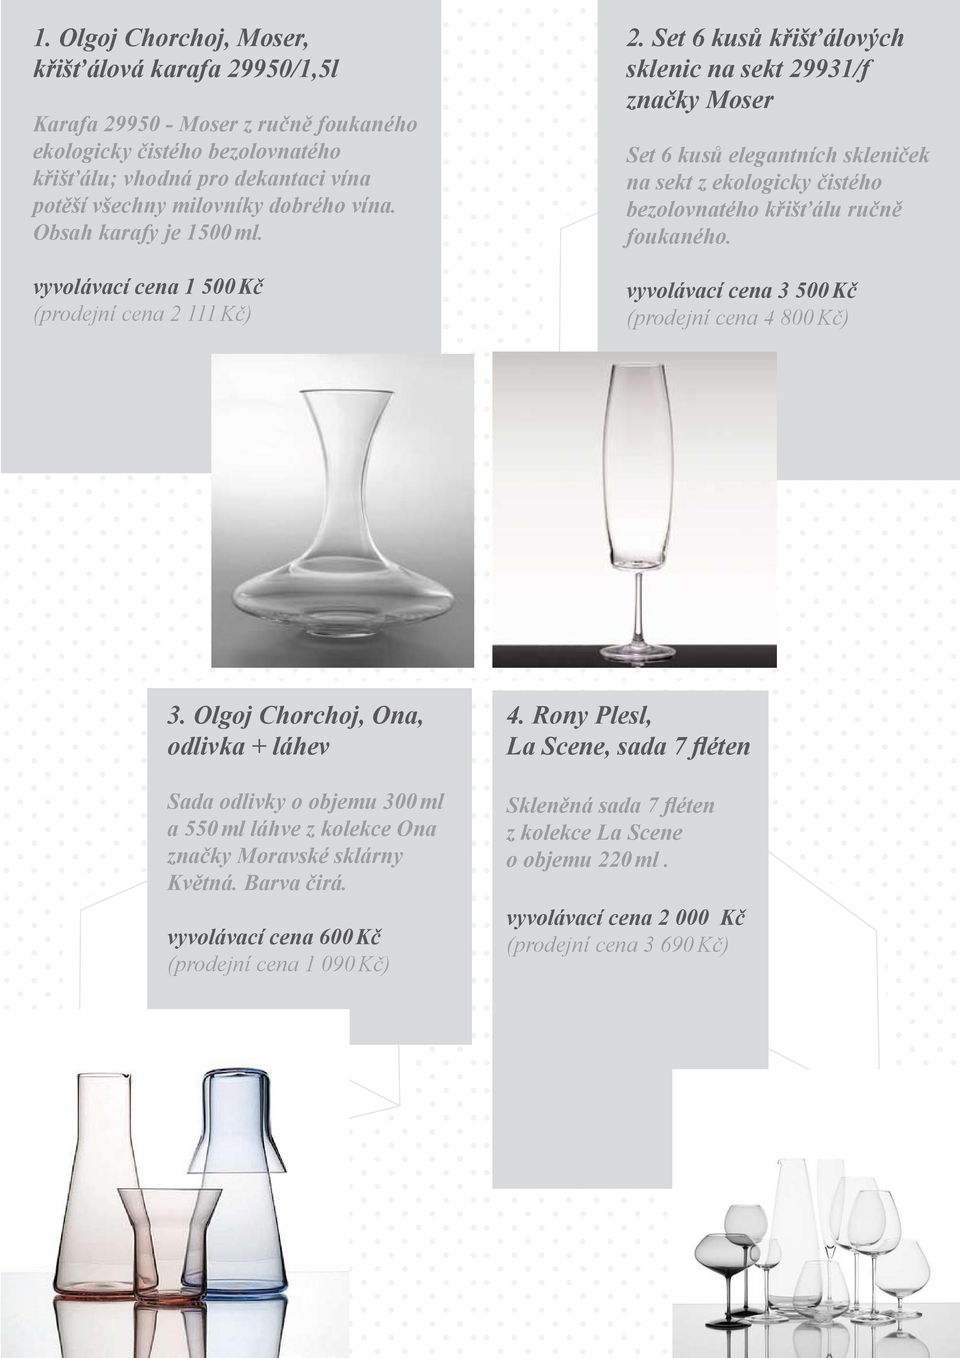 Set 6 kusů křišťálových sklenic na sekt 29931/f značky Moser Set 6 kusů elegantních skleniček na sekt z ekologicky čistého bezolovnatého křišťálu ručně foukaného.